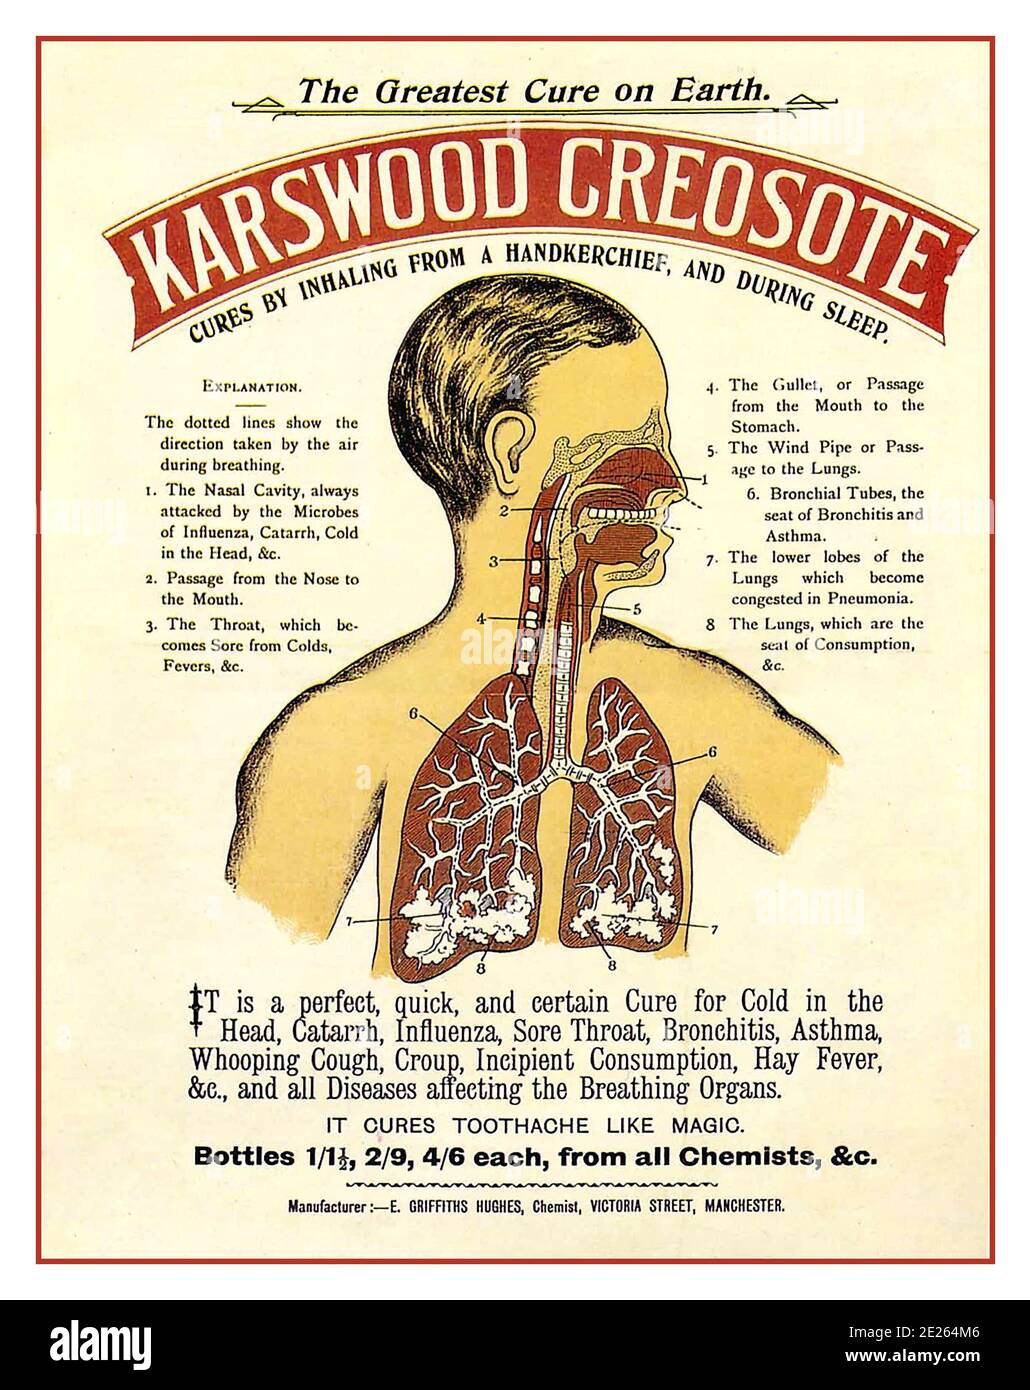 Vintage 1900 Werbeplakat für "Karswood Creosote" . Eine Werbung für ein „Wunder“-Arzneimittel. Aus Kreosot hergestellte Medikamente waren rezeptfrei für den häuslichen Gebrauch erhältlich, und sobald diese Medizin Karswood-Kreosot war, wurde sie um 1895 eingeführt. Als es herauskam, wurde es als neues Sweetwood Kreosot, für das Einatmen von einem Taschentuch beworben. Wenn Sie unter Cold in the Head leiden, versuchen Sie eine Flasche: Es wird Sie sofort entlasten. Eine perfekte Heilung für Husten, Bronchitis, Asthma, Keuchhusten, cruups, Nasal Catarrh [verstopfte Nase] usw. Stockfoto